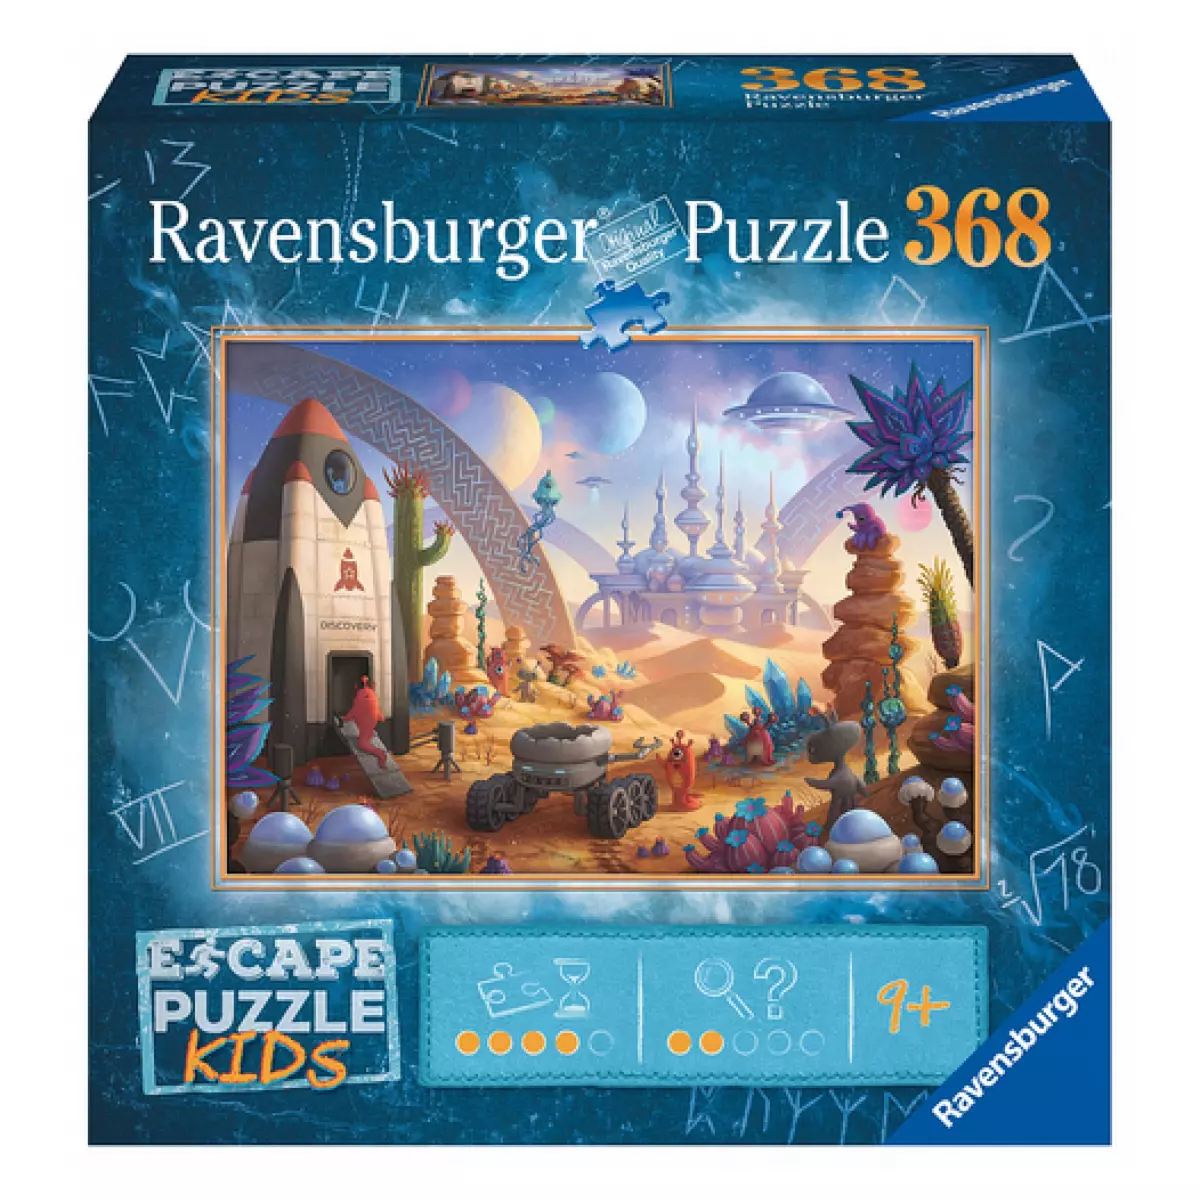 RAVENSBURGER Escape Puzzle kids Mission spatiale 368 pieces